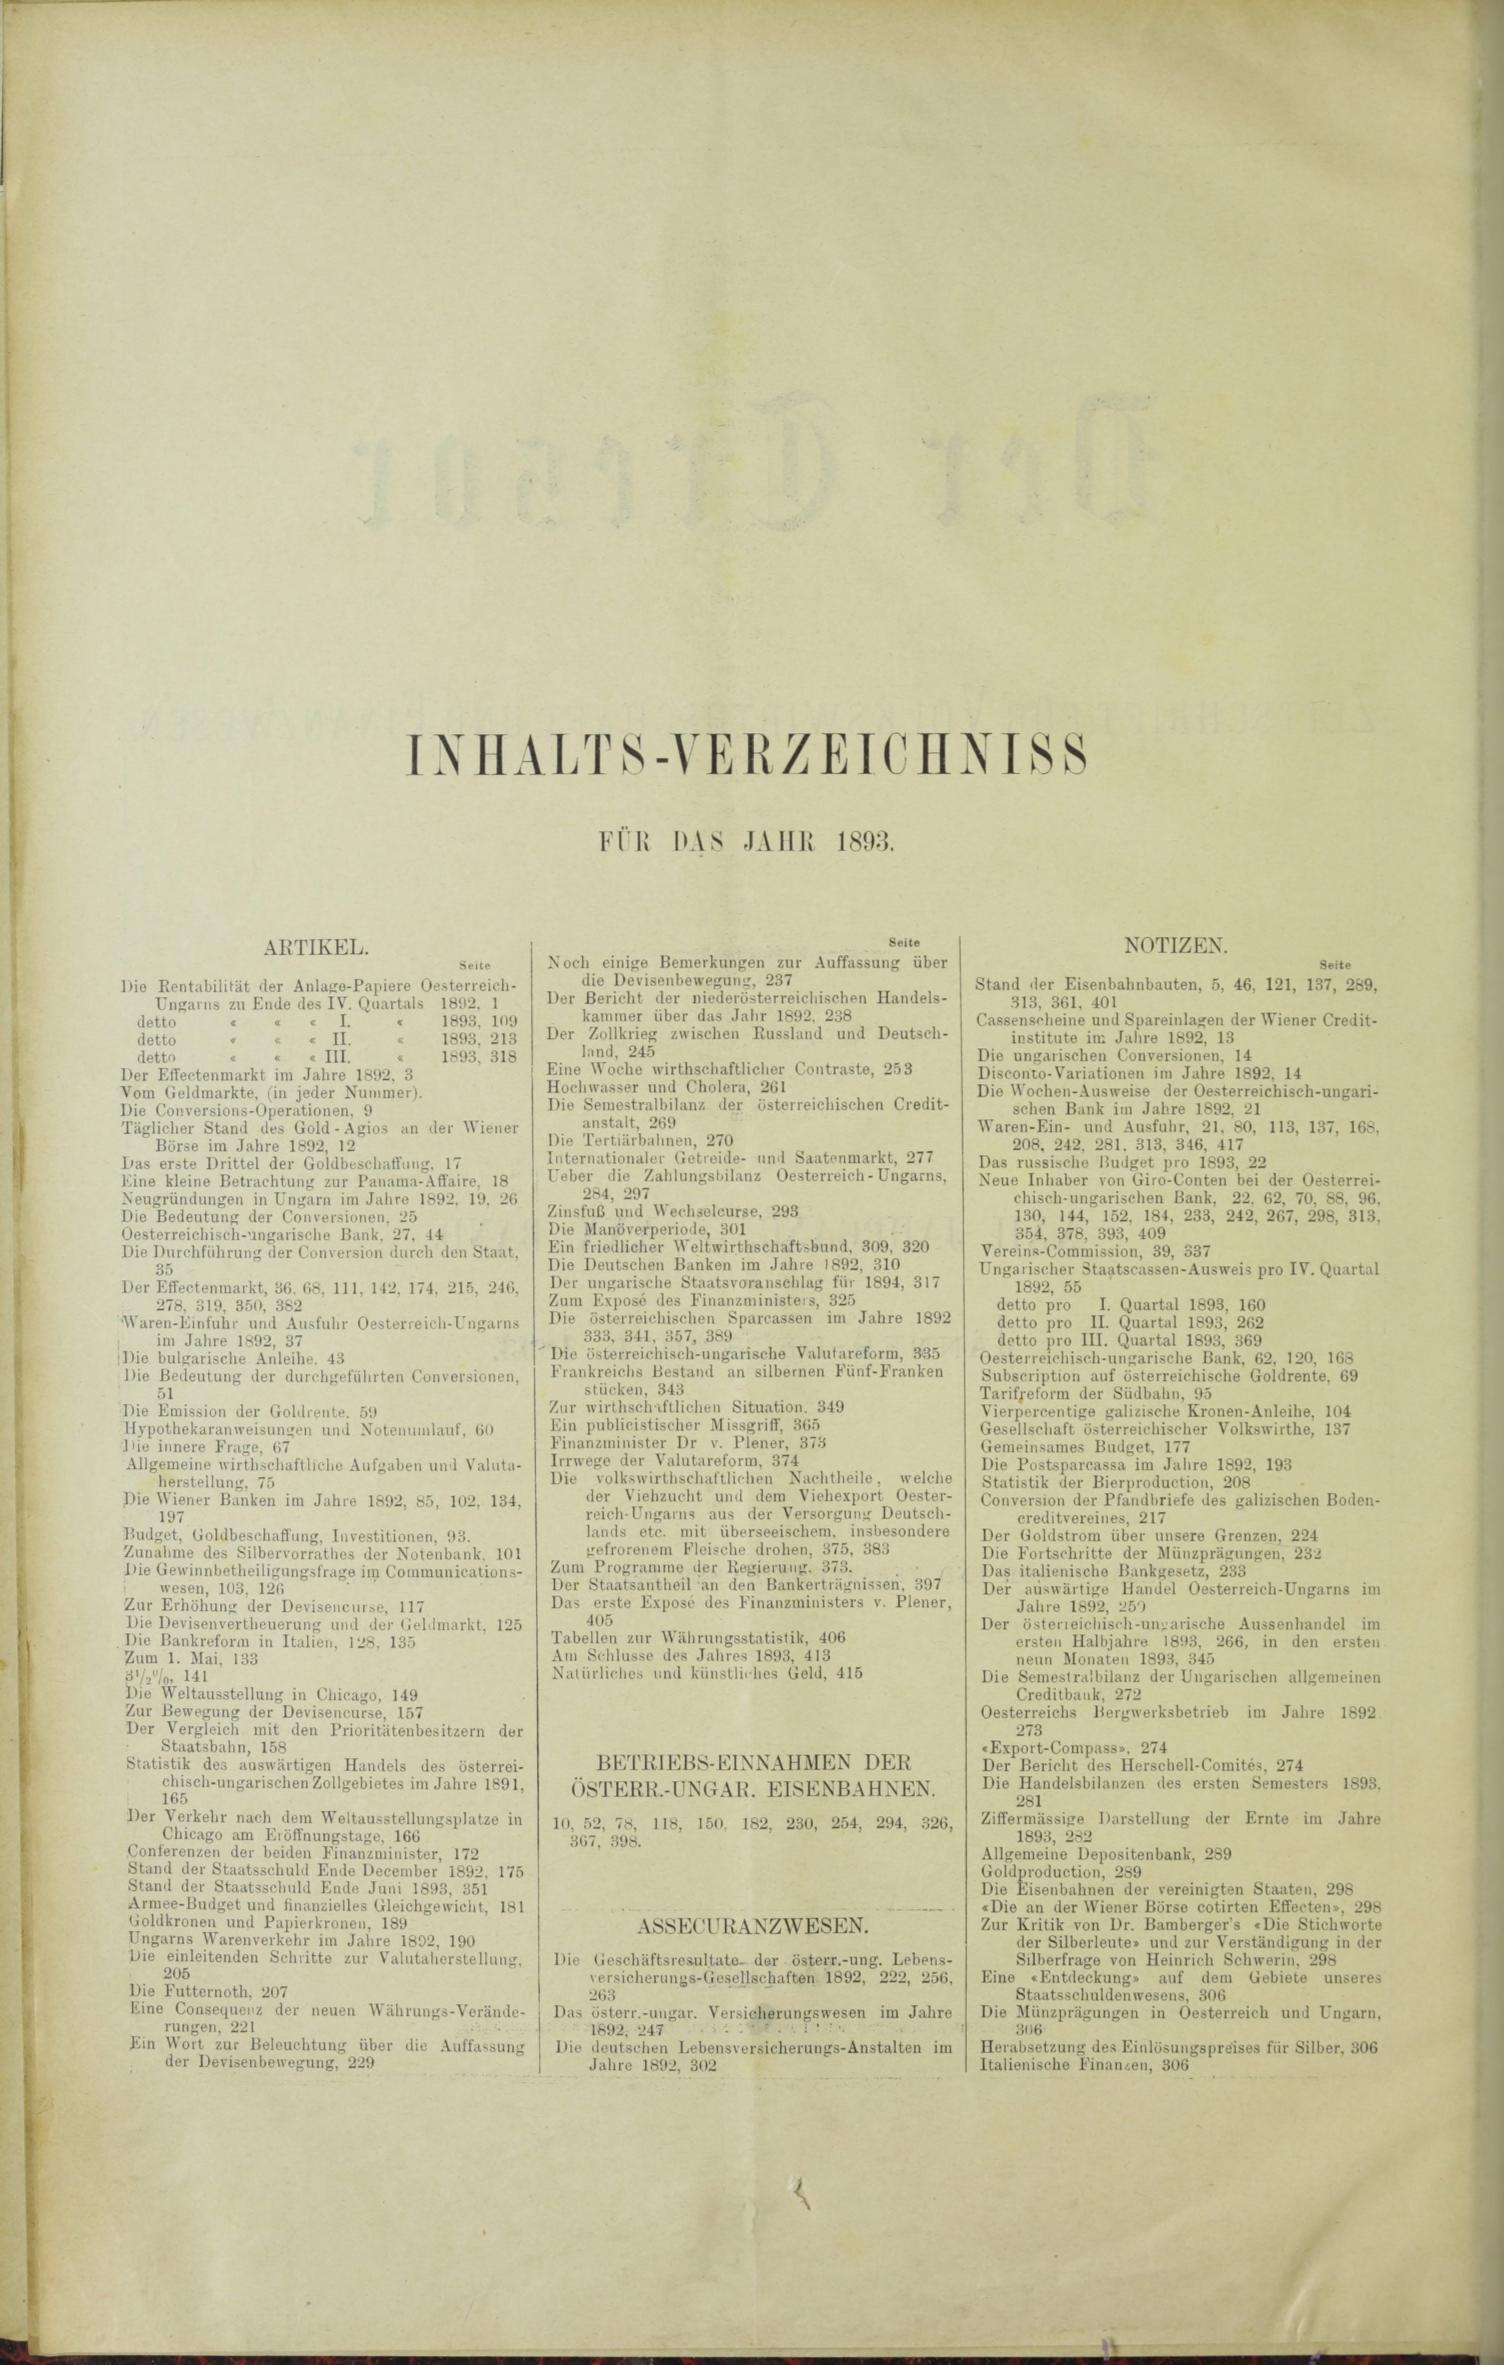 Der Tresor 30.03.1893 - Seite 10